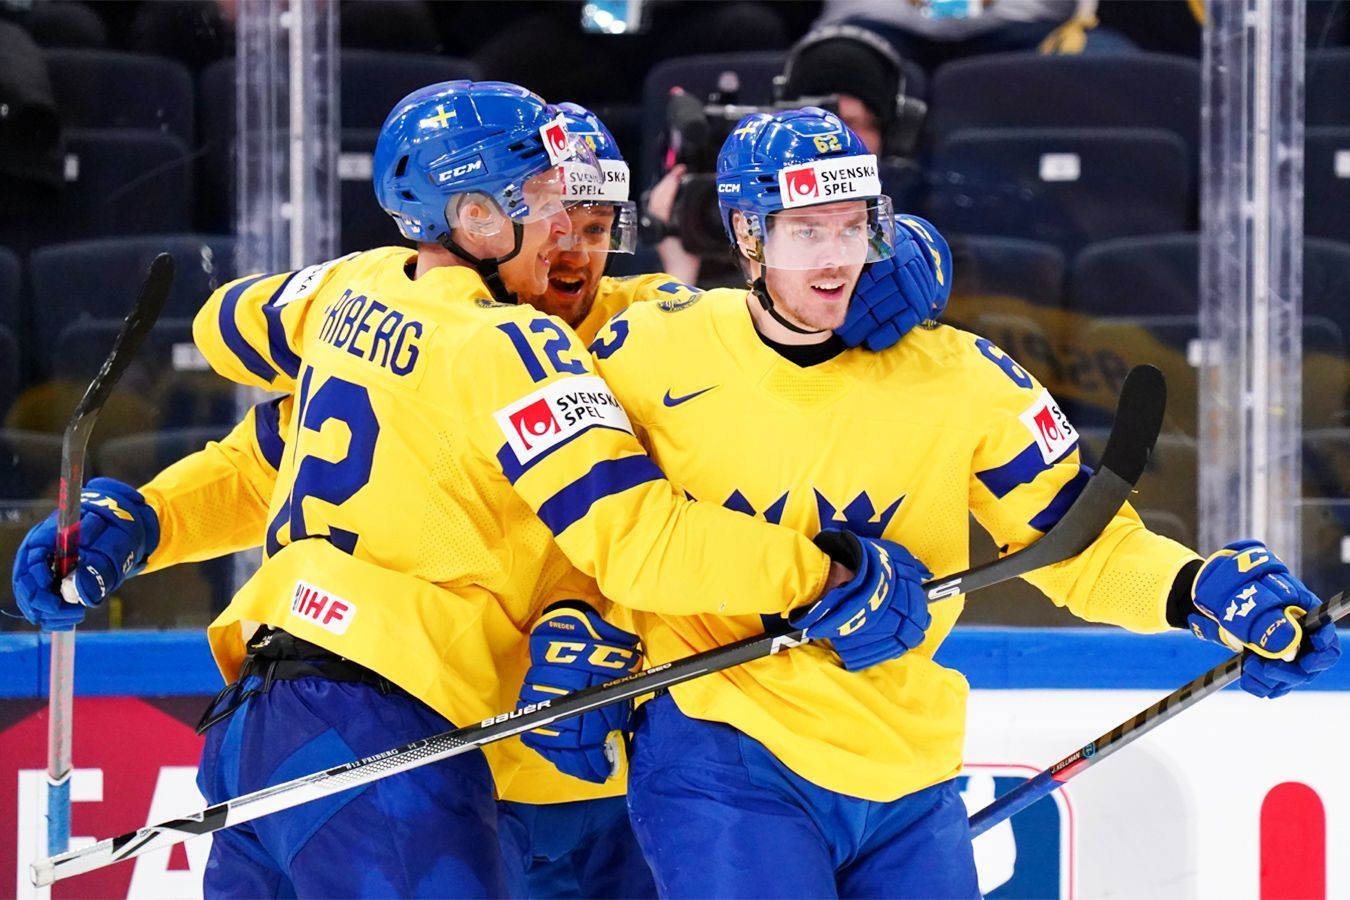 Швеция — Латвия прогноз на матч 24 мая на ЧМ-2022 по хоккею: ставки и коэффициенты на игру